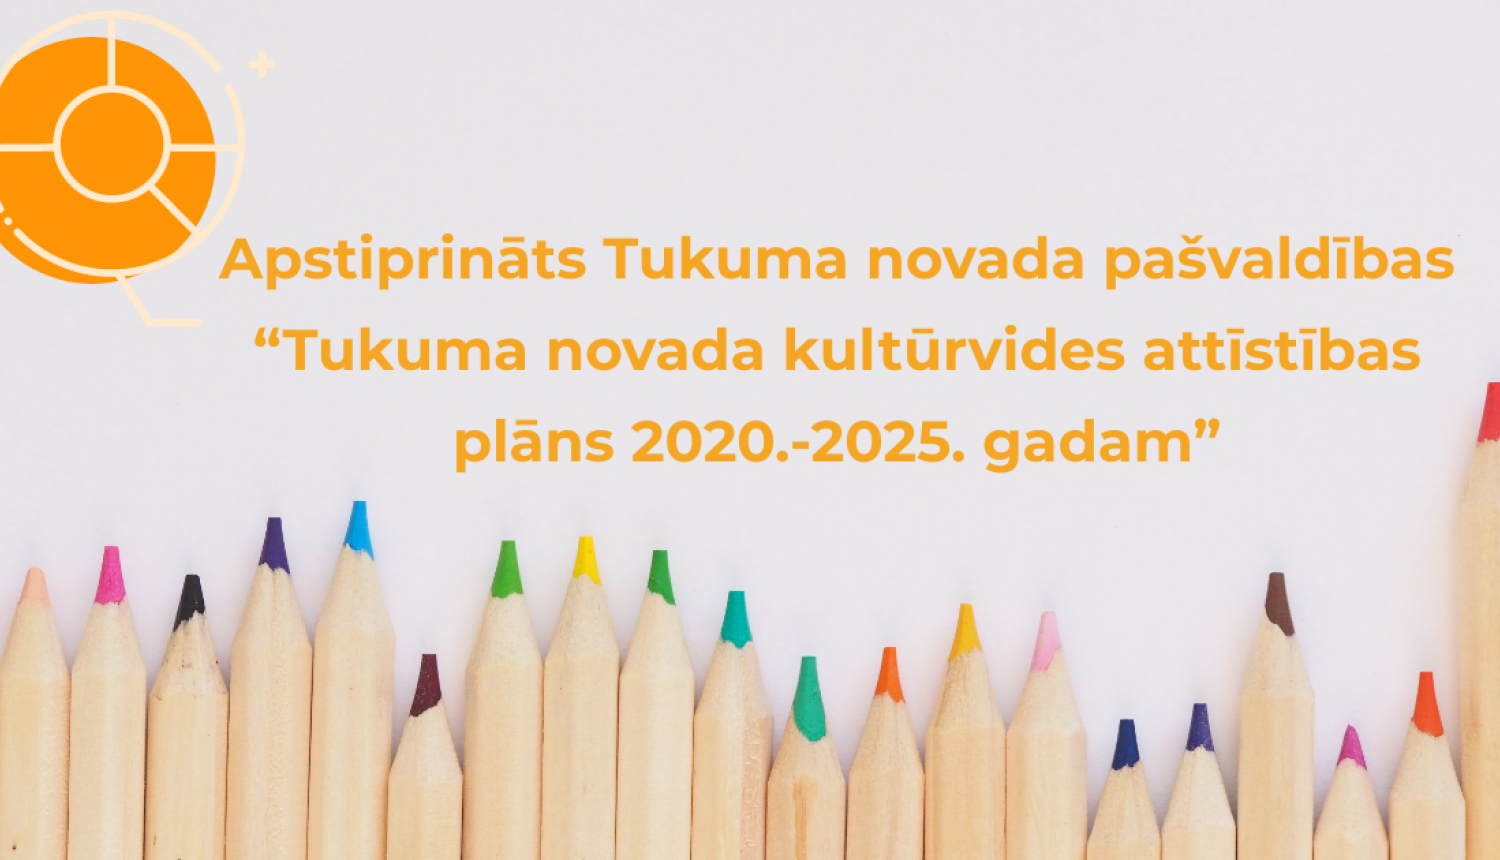 Apstiprināts Tukuma novada pašvaldības vidēja termiņa attīstības plānošanas dokuments “Tukuma novada kultūrvides attīstības plāns 2020.-2025. gadam”